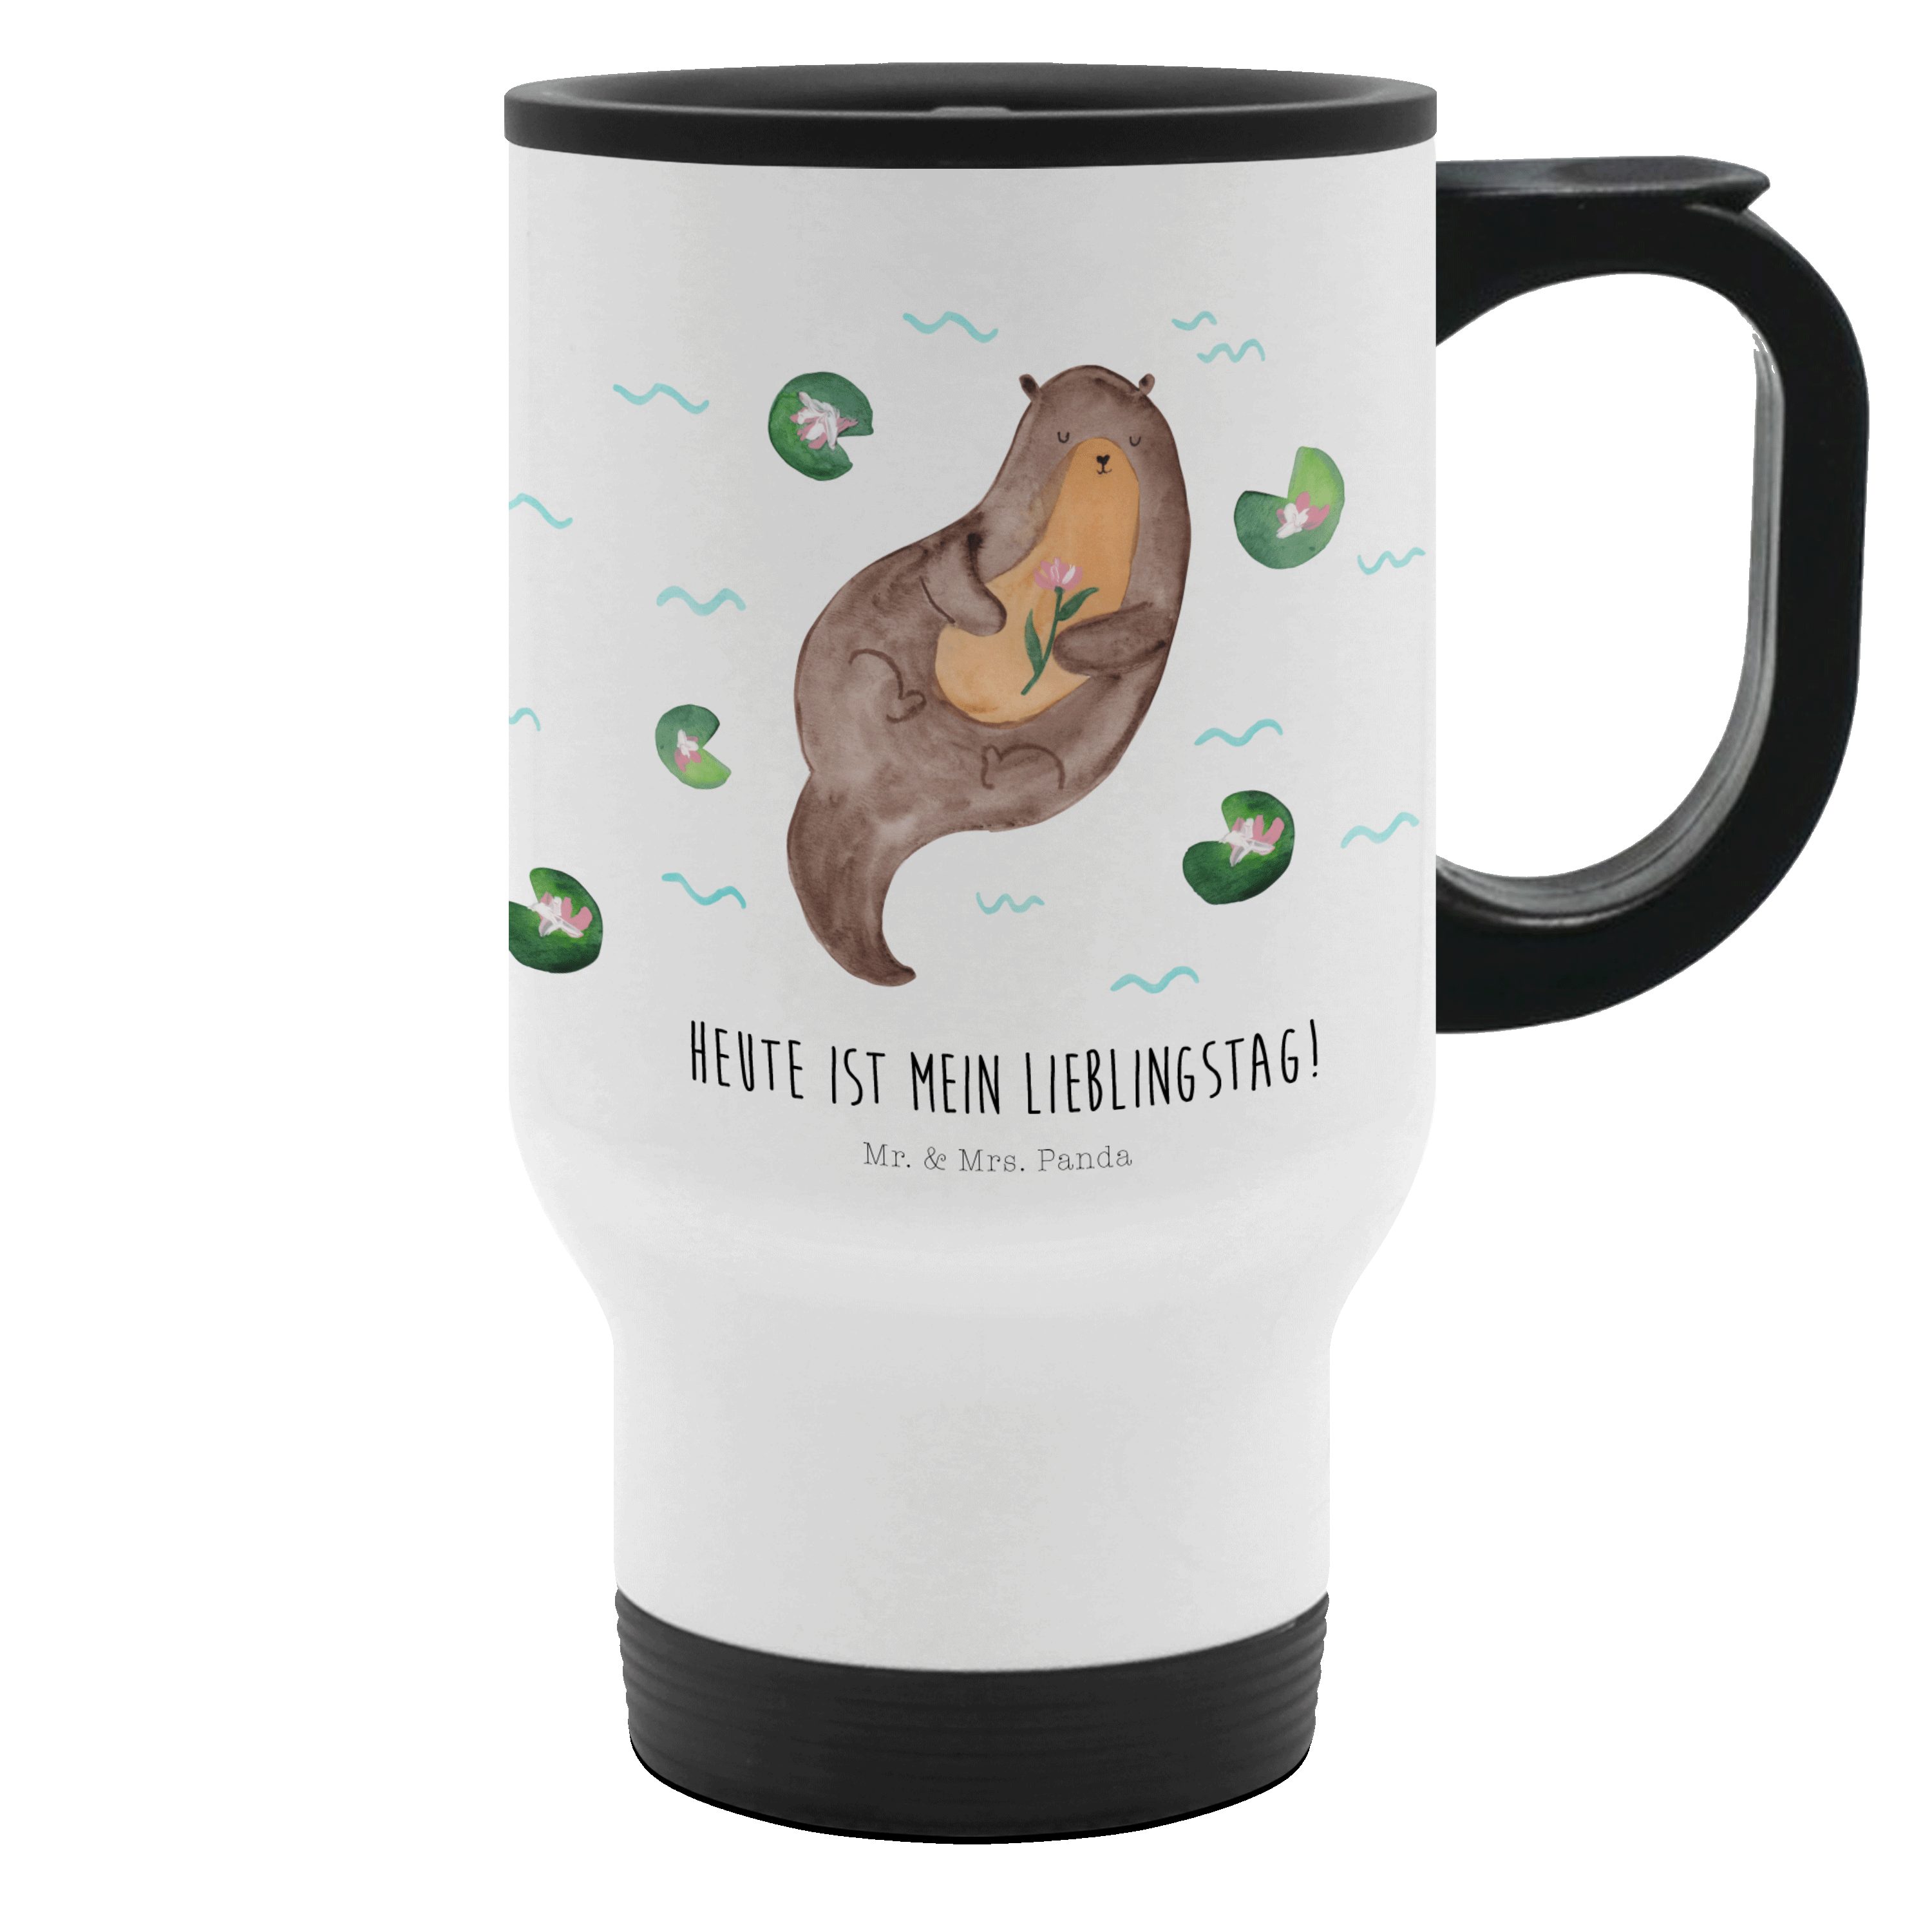 Mr. & Mrs. Panda Thermobecher Otter mit Seerose - Weiß - Geschenk, Wasser, Seeotter, Warmhaltetasse, Edelstahl